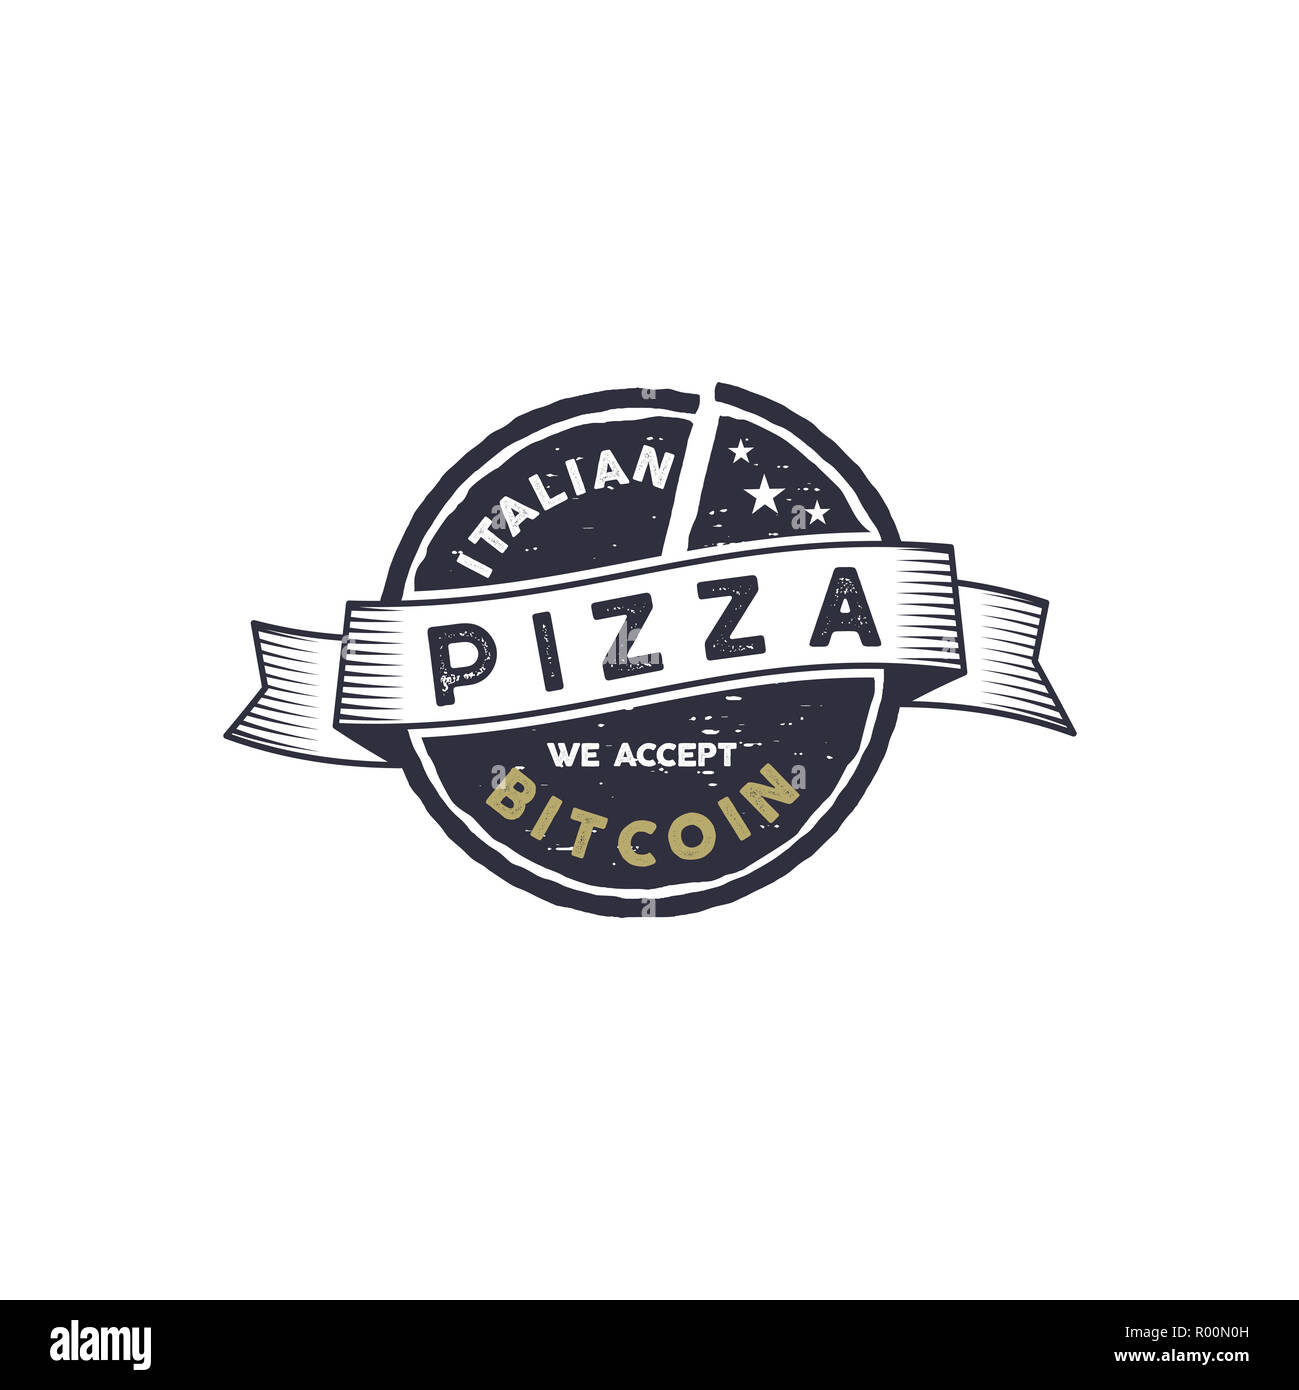 Pizza italienne pour l'emblème de Bitcoin. Nous acceptons BTC logo design. Les biens numériques pour des biens réels concept. Vintage style dessiné à la main. Stock illustration isolé sur fond blanc Banque D'Images